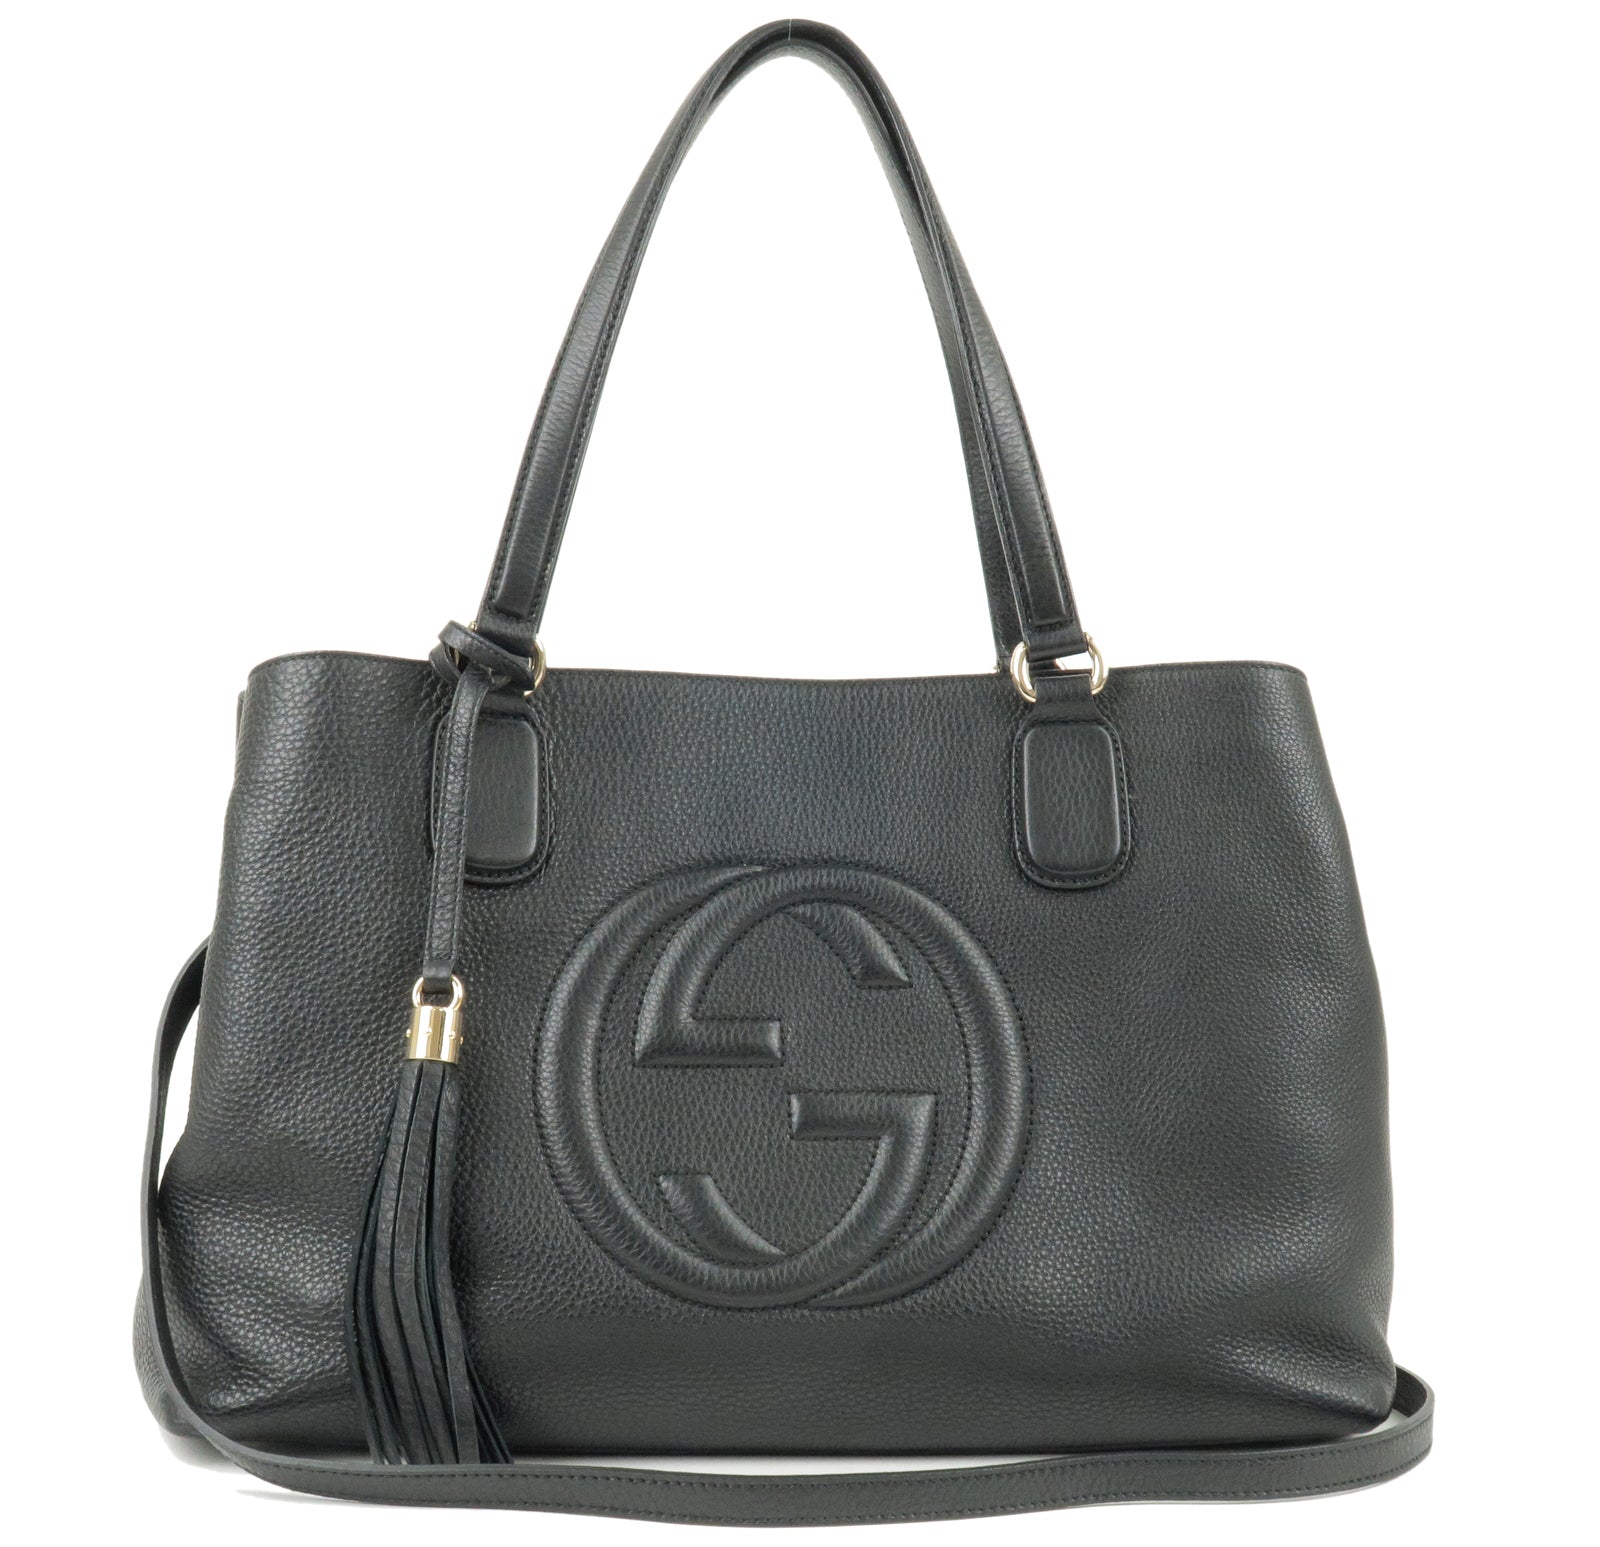 GUCCI-SOHO-Leather-2-Way-Shoulder-Bag-Tote-Bag-Black-308363